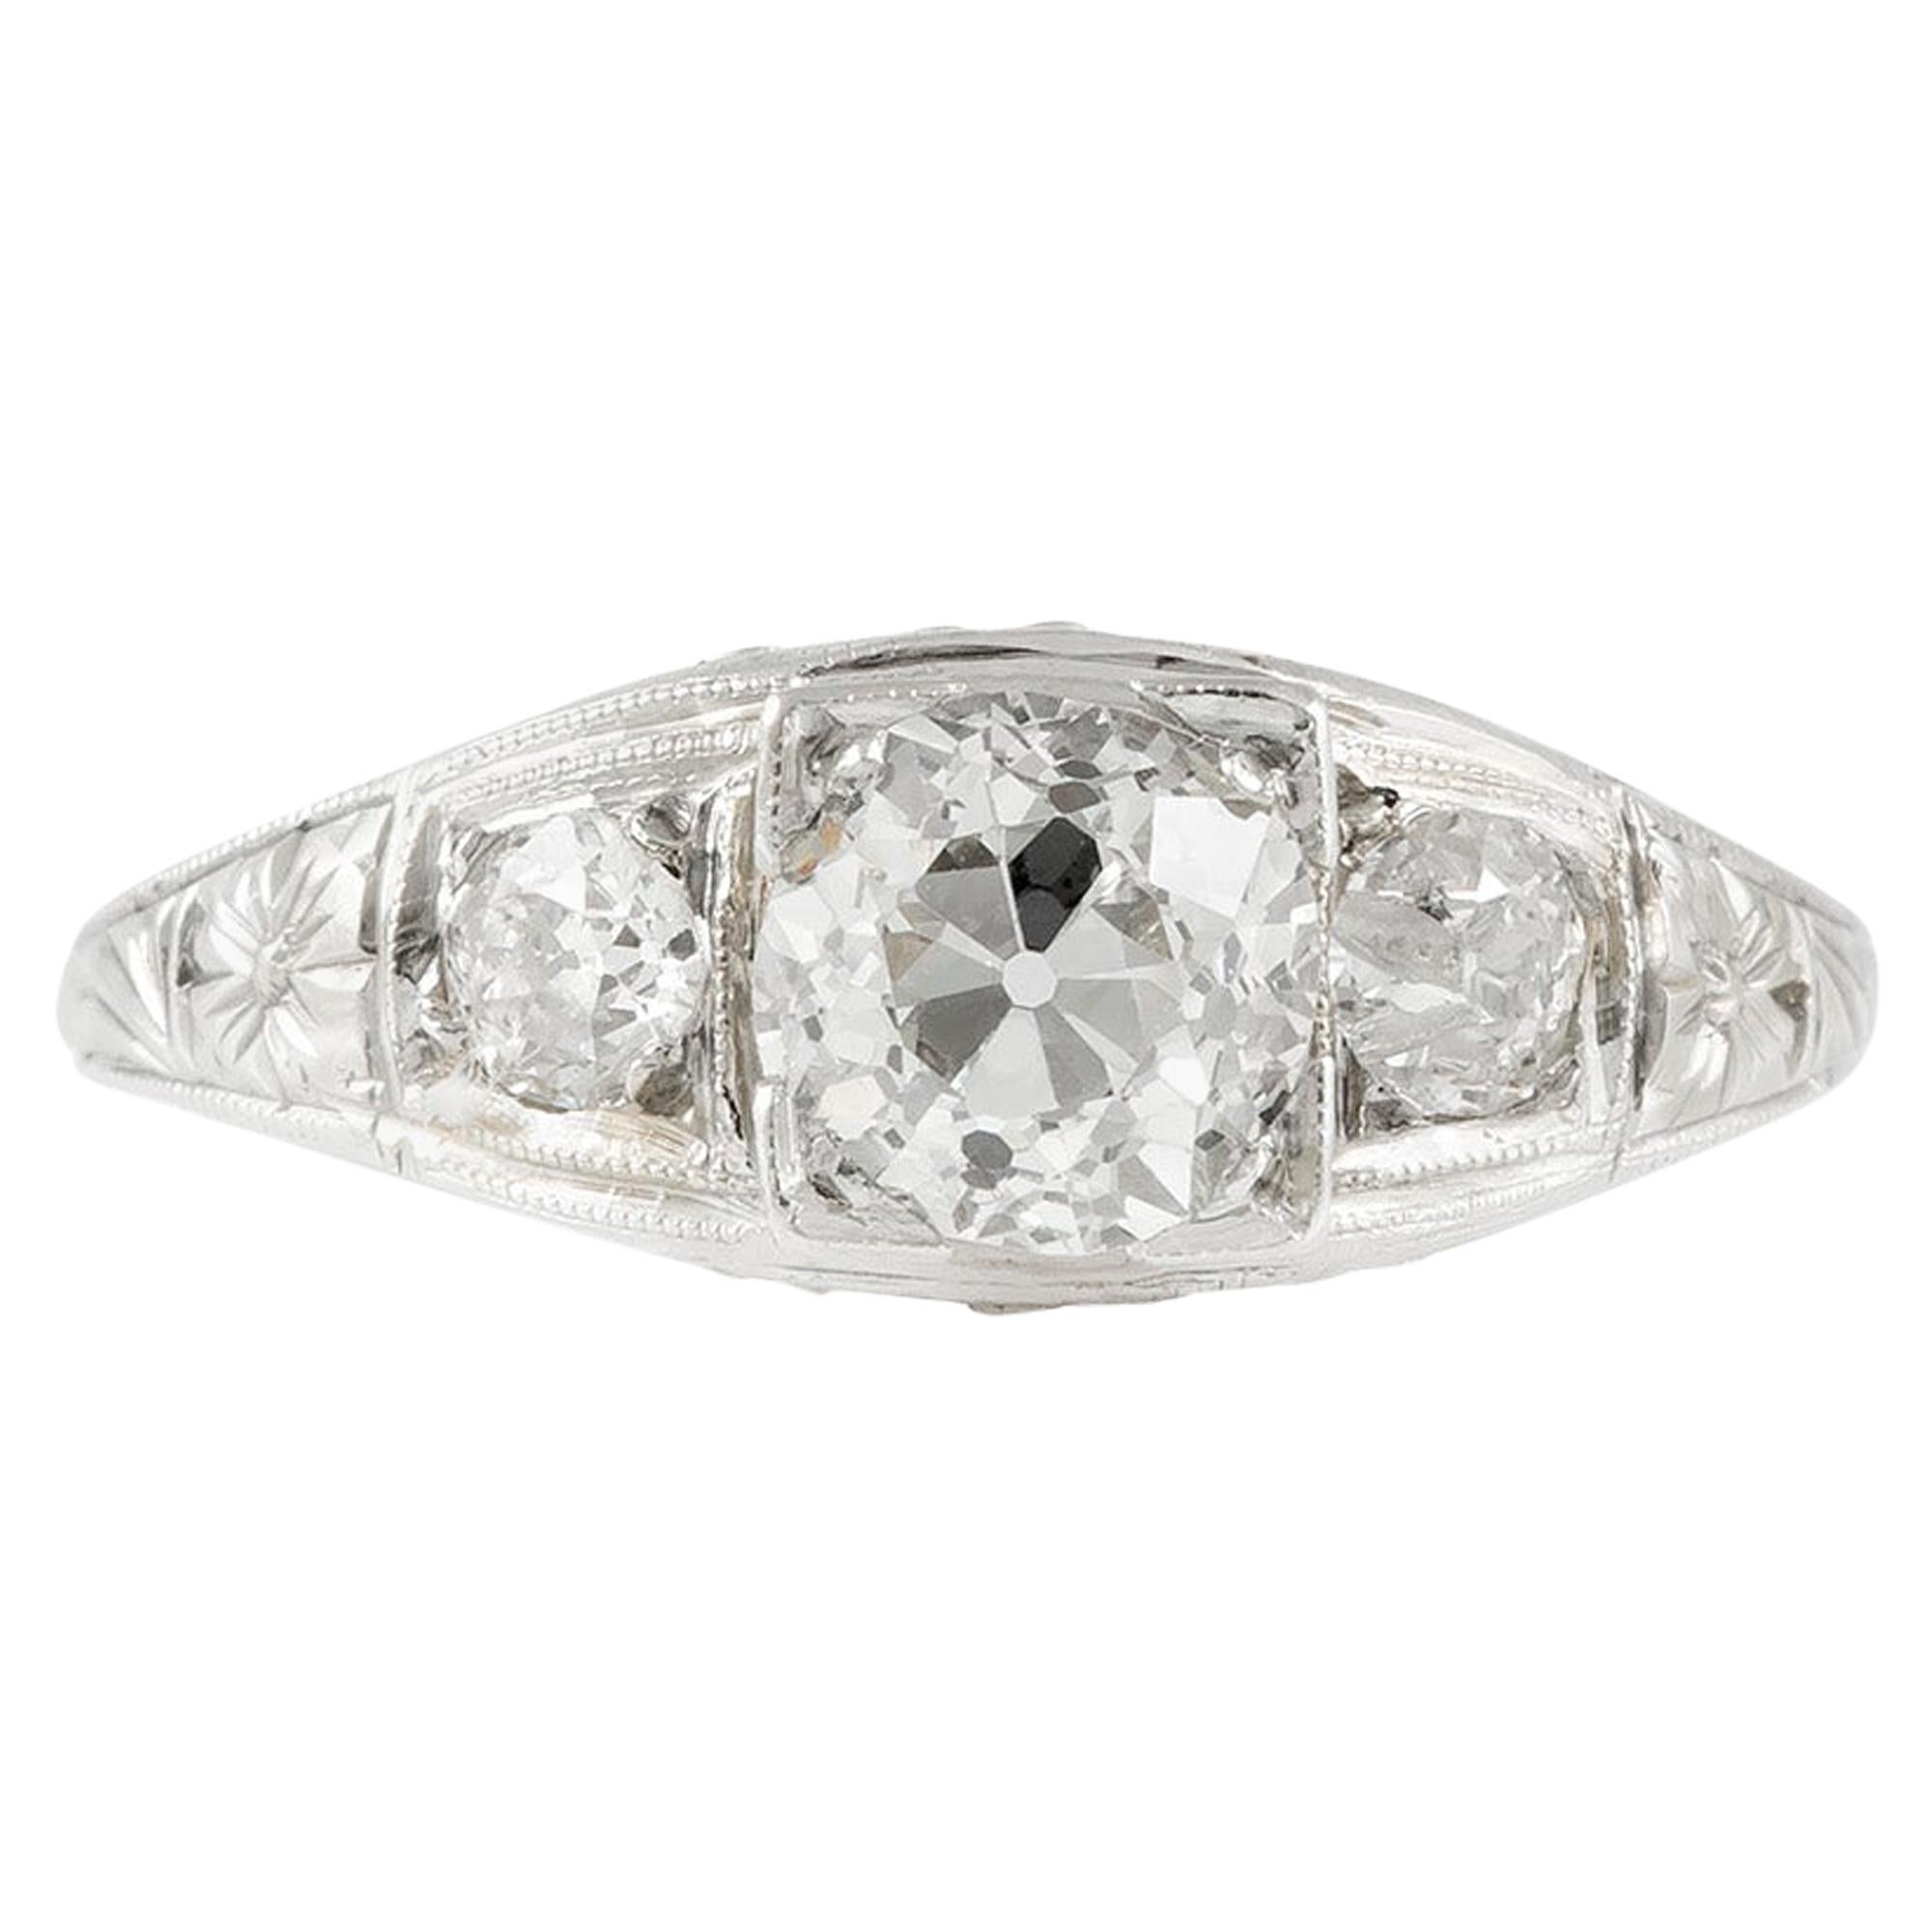 1920s Art Deco Filigree Platinum with 0.87 Carat Center Diamond Engagement Ring